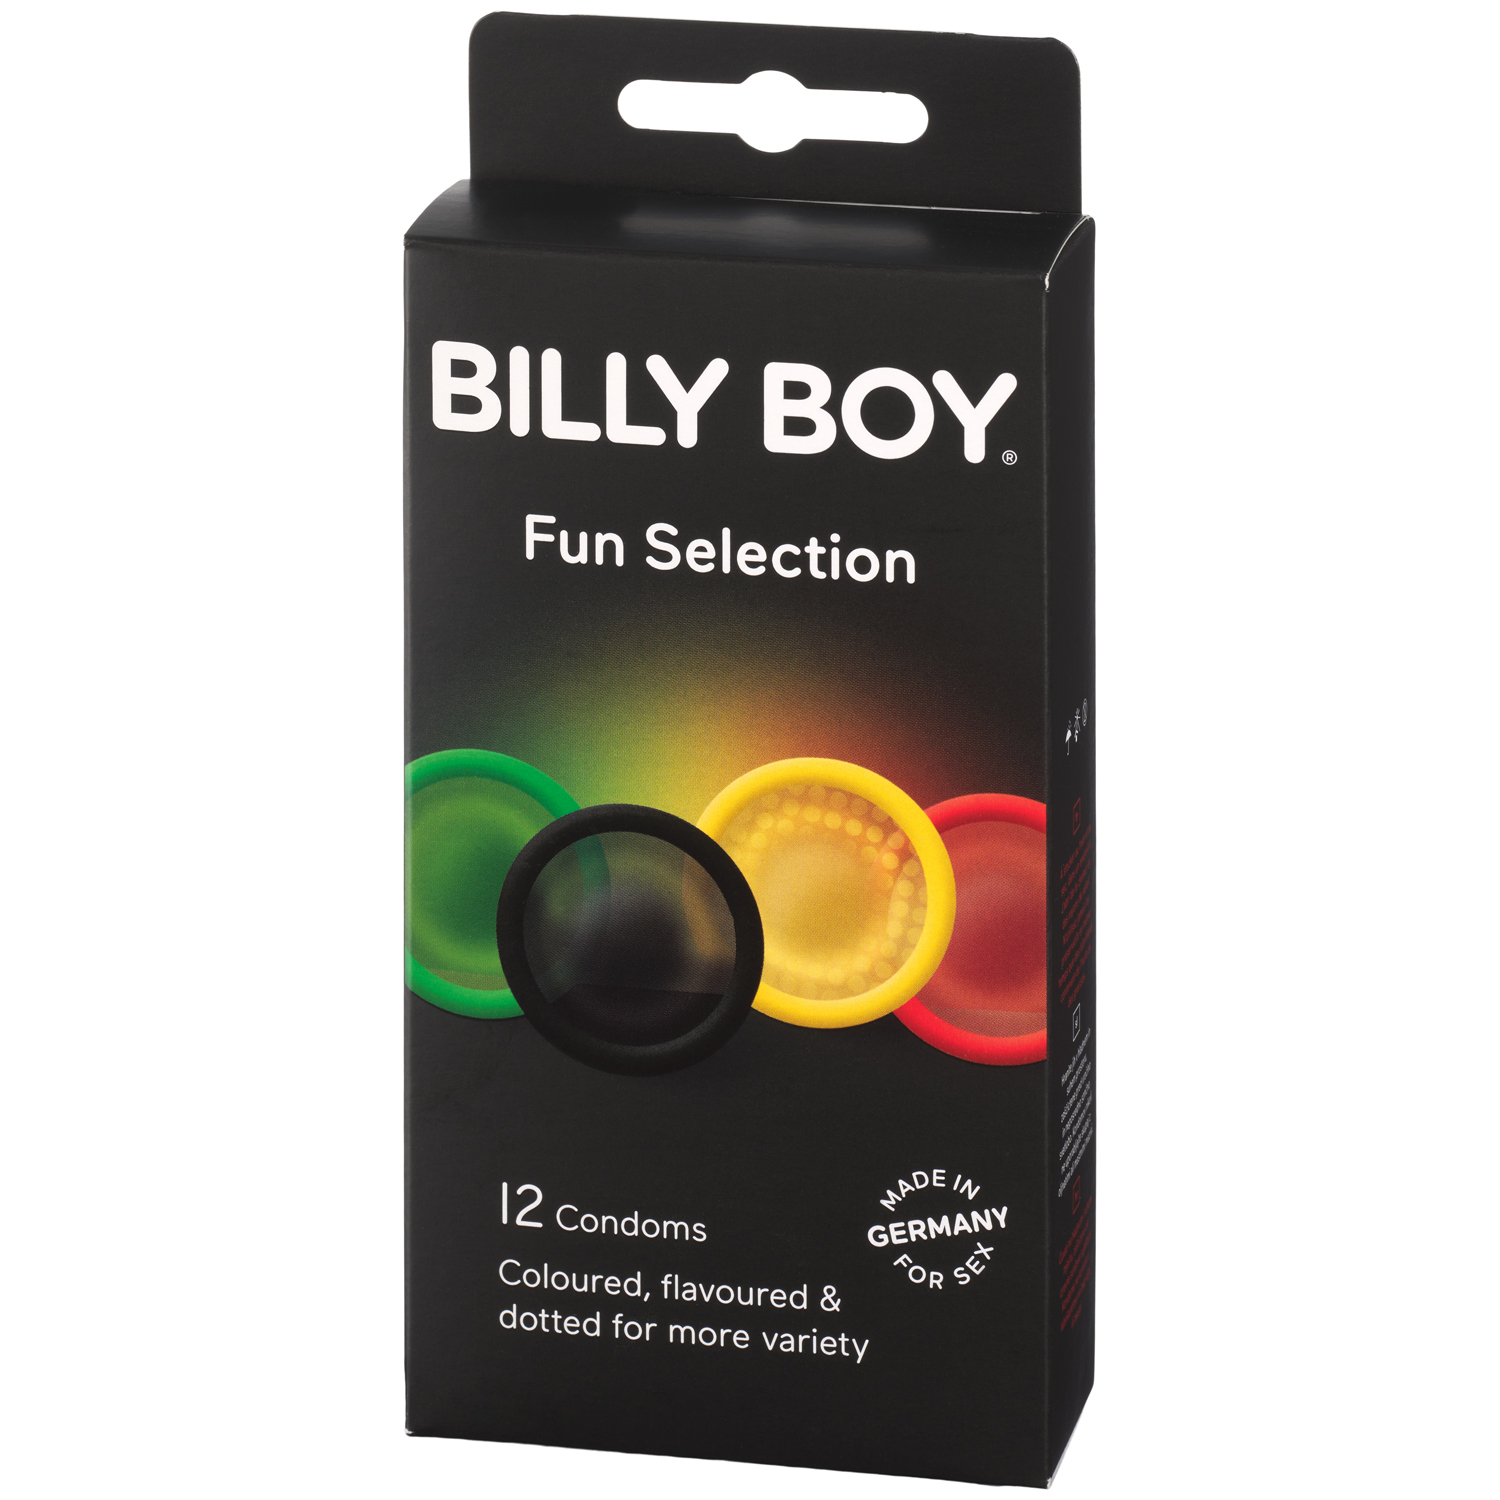 Billy Boy Fun Selection Kondomer 12 stk     - Klar thumbnail